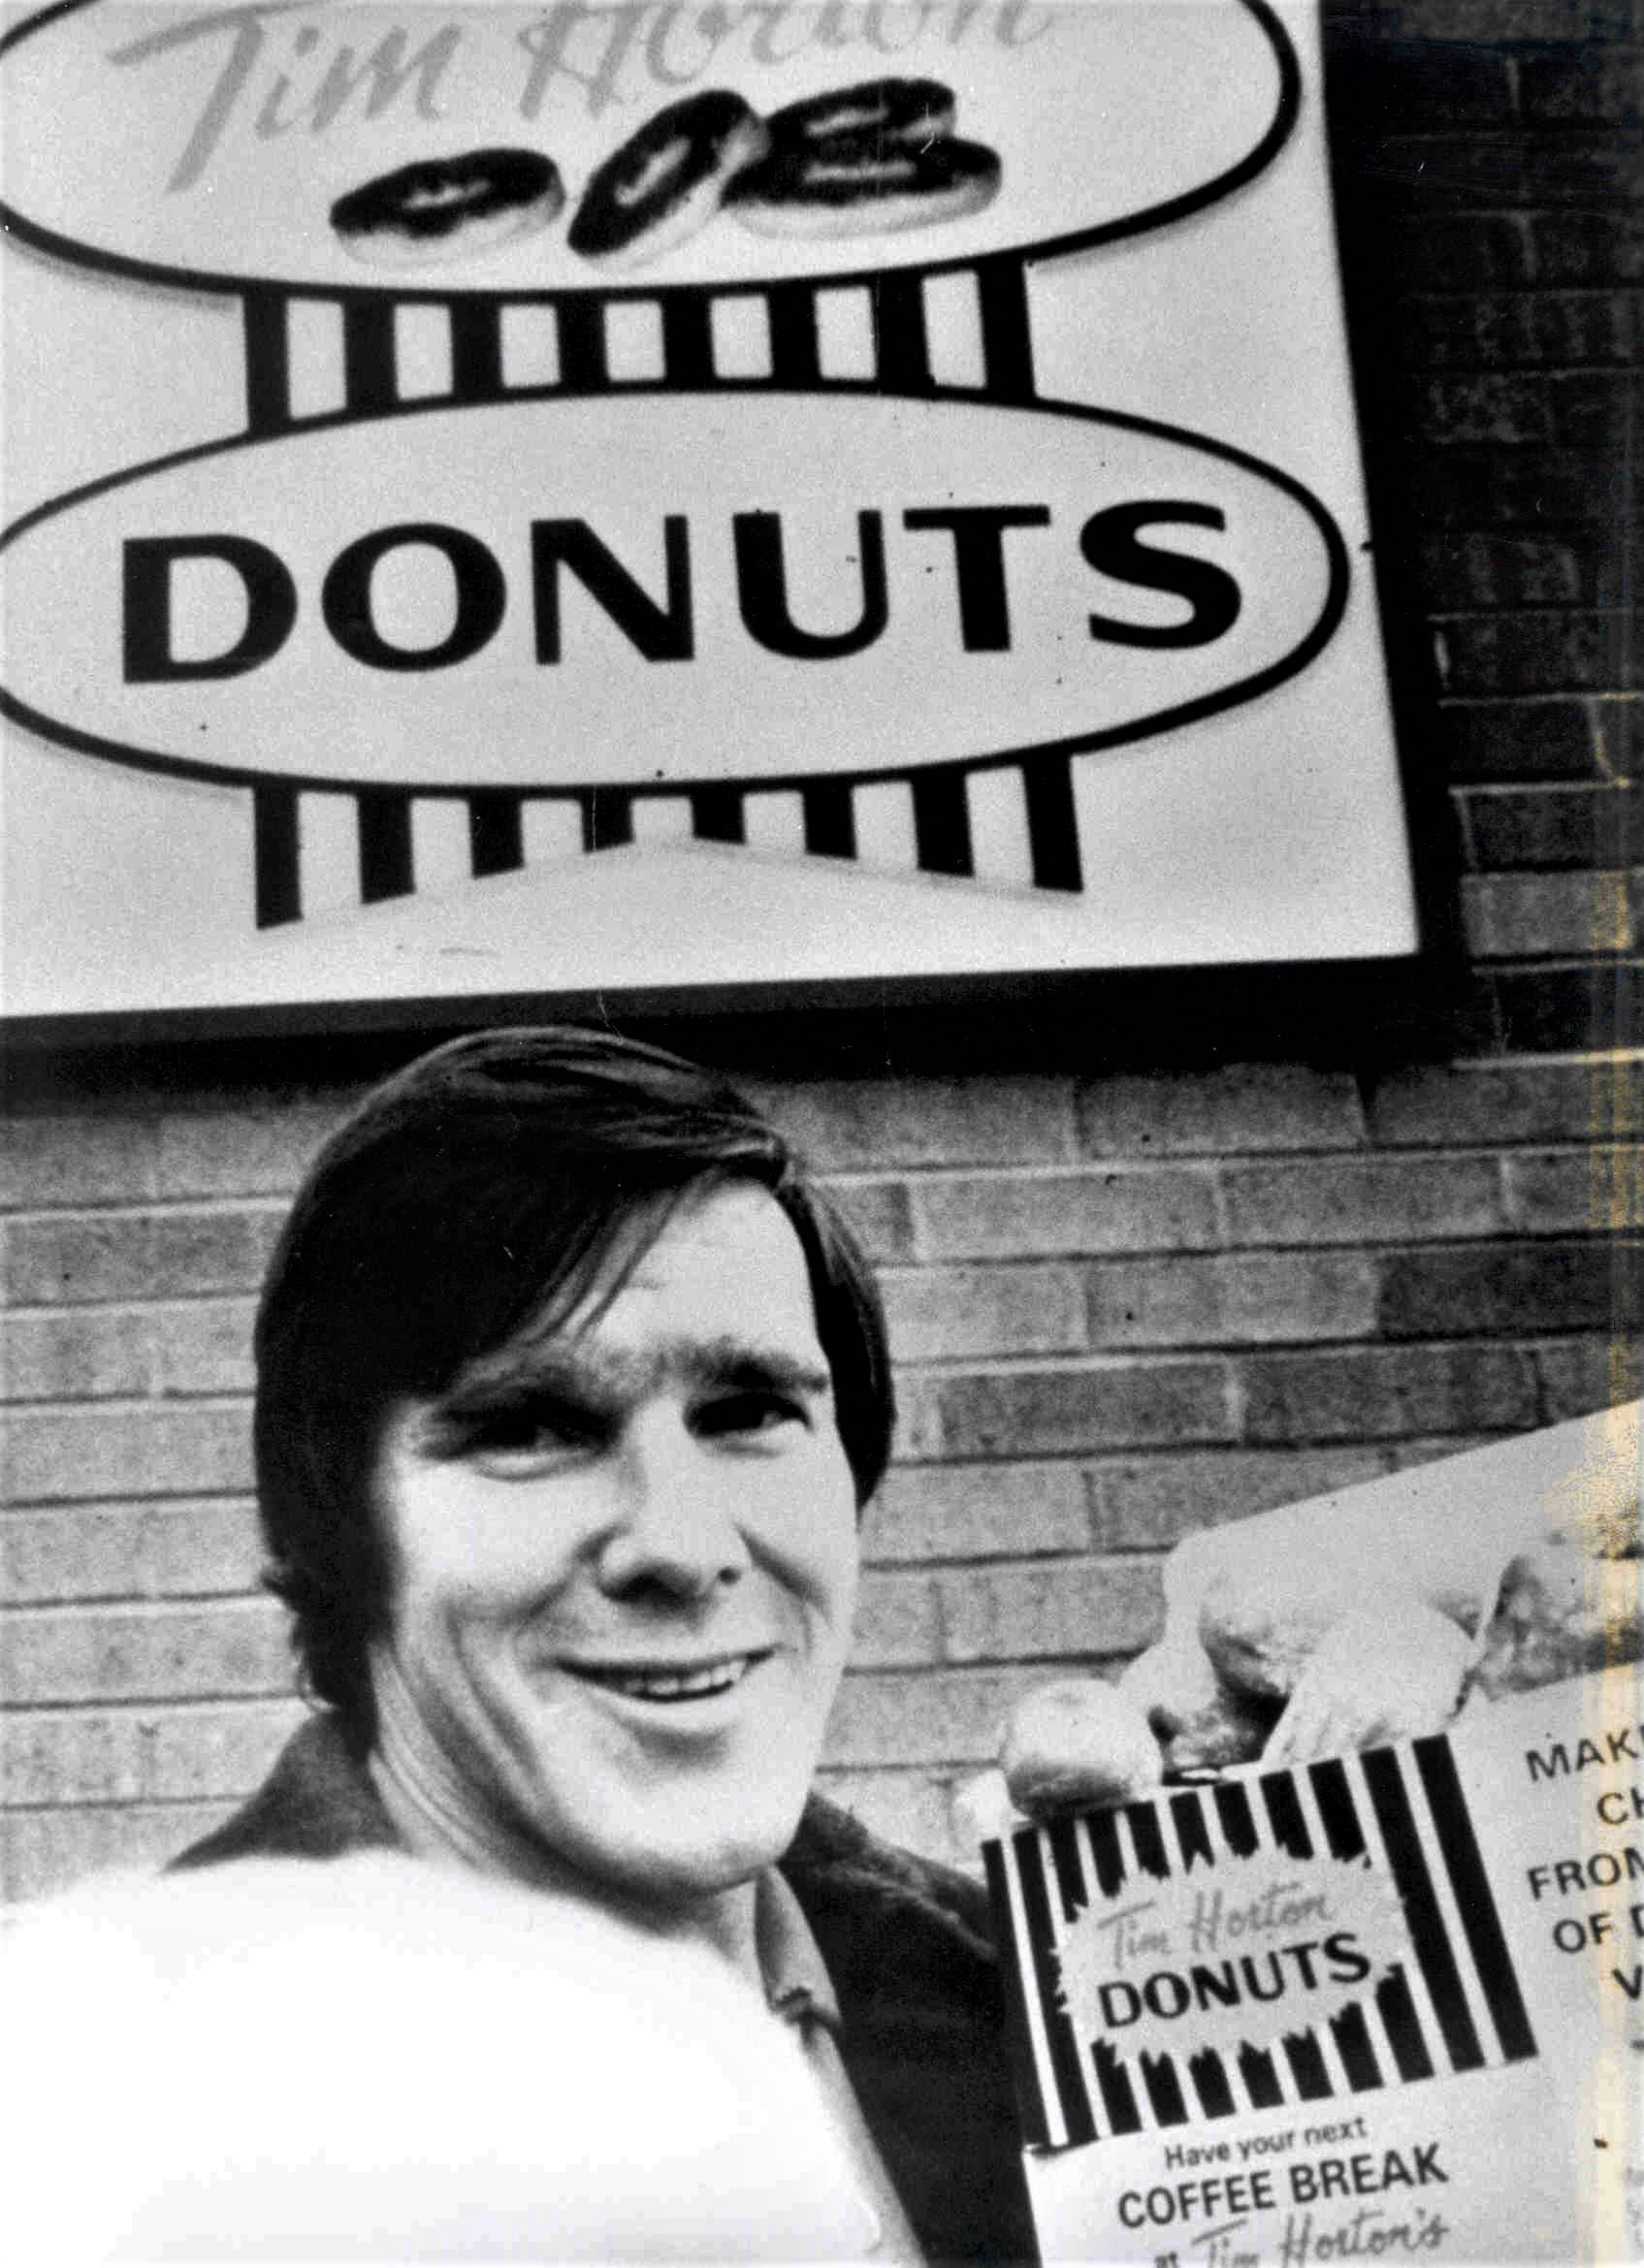 Tìm hiểu về lịch sử khởi đầu của Tim Horton! Từ những cửa hàng đầu tiên đến sự mở rộng khắp nơi, Tim Horton đã trở thành một trong những thương hiệu nổi tiếng nhất trong lĩnh vực đồ uống và bánh ngọt.